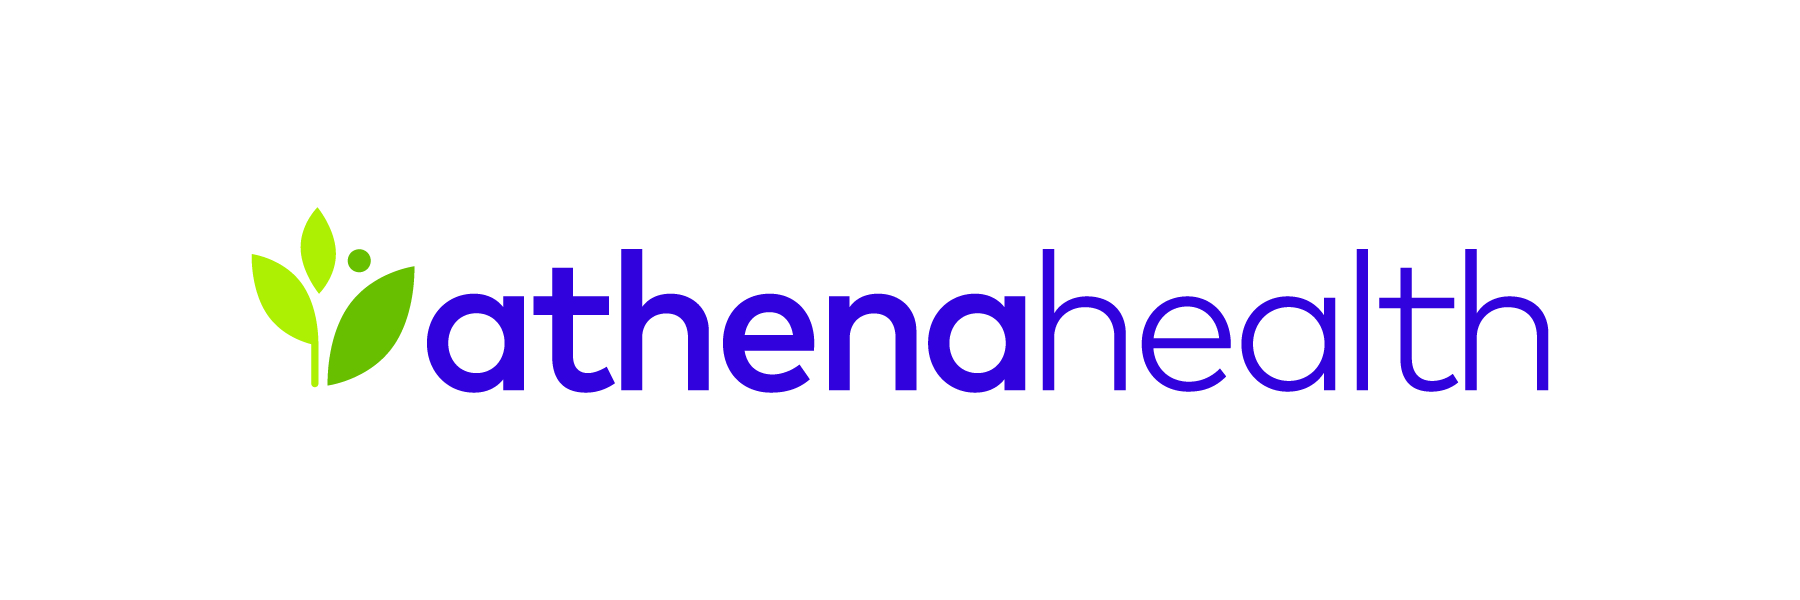 Athenahealth Logos